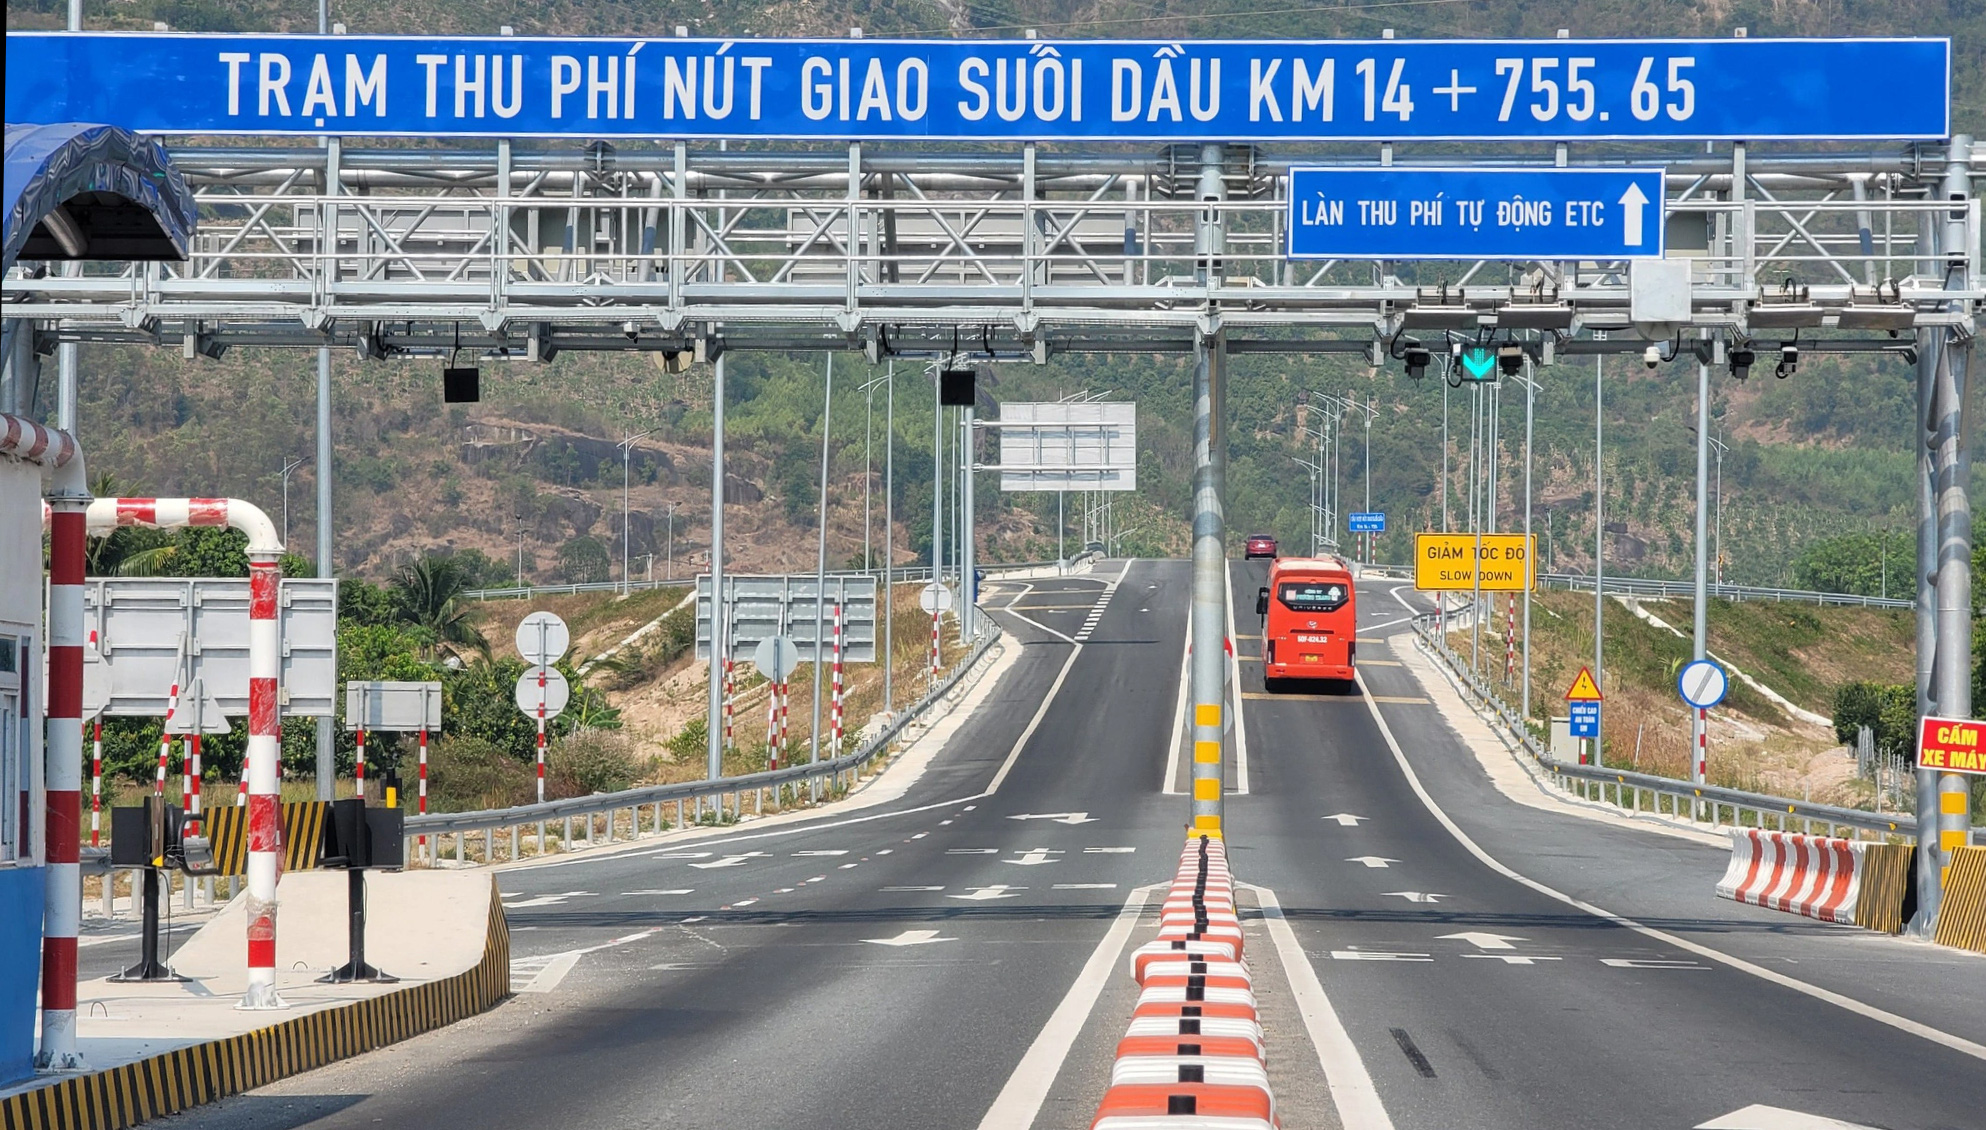 Trạm thu phí tại nút giao Suối Dầu trên cao tốc Nha Trang - Cam Lâm - Ảnh: TRẦN HƯỚNG